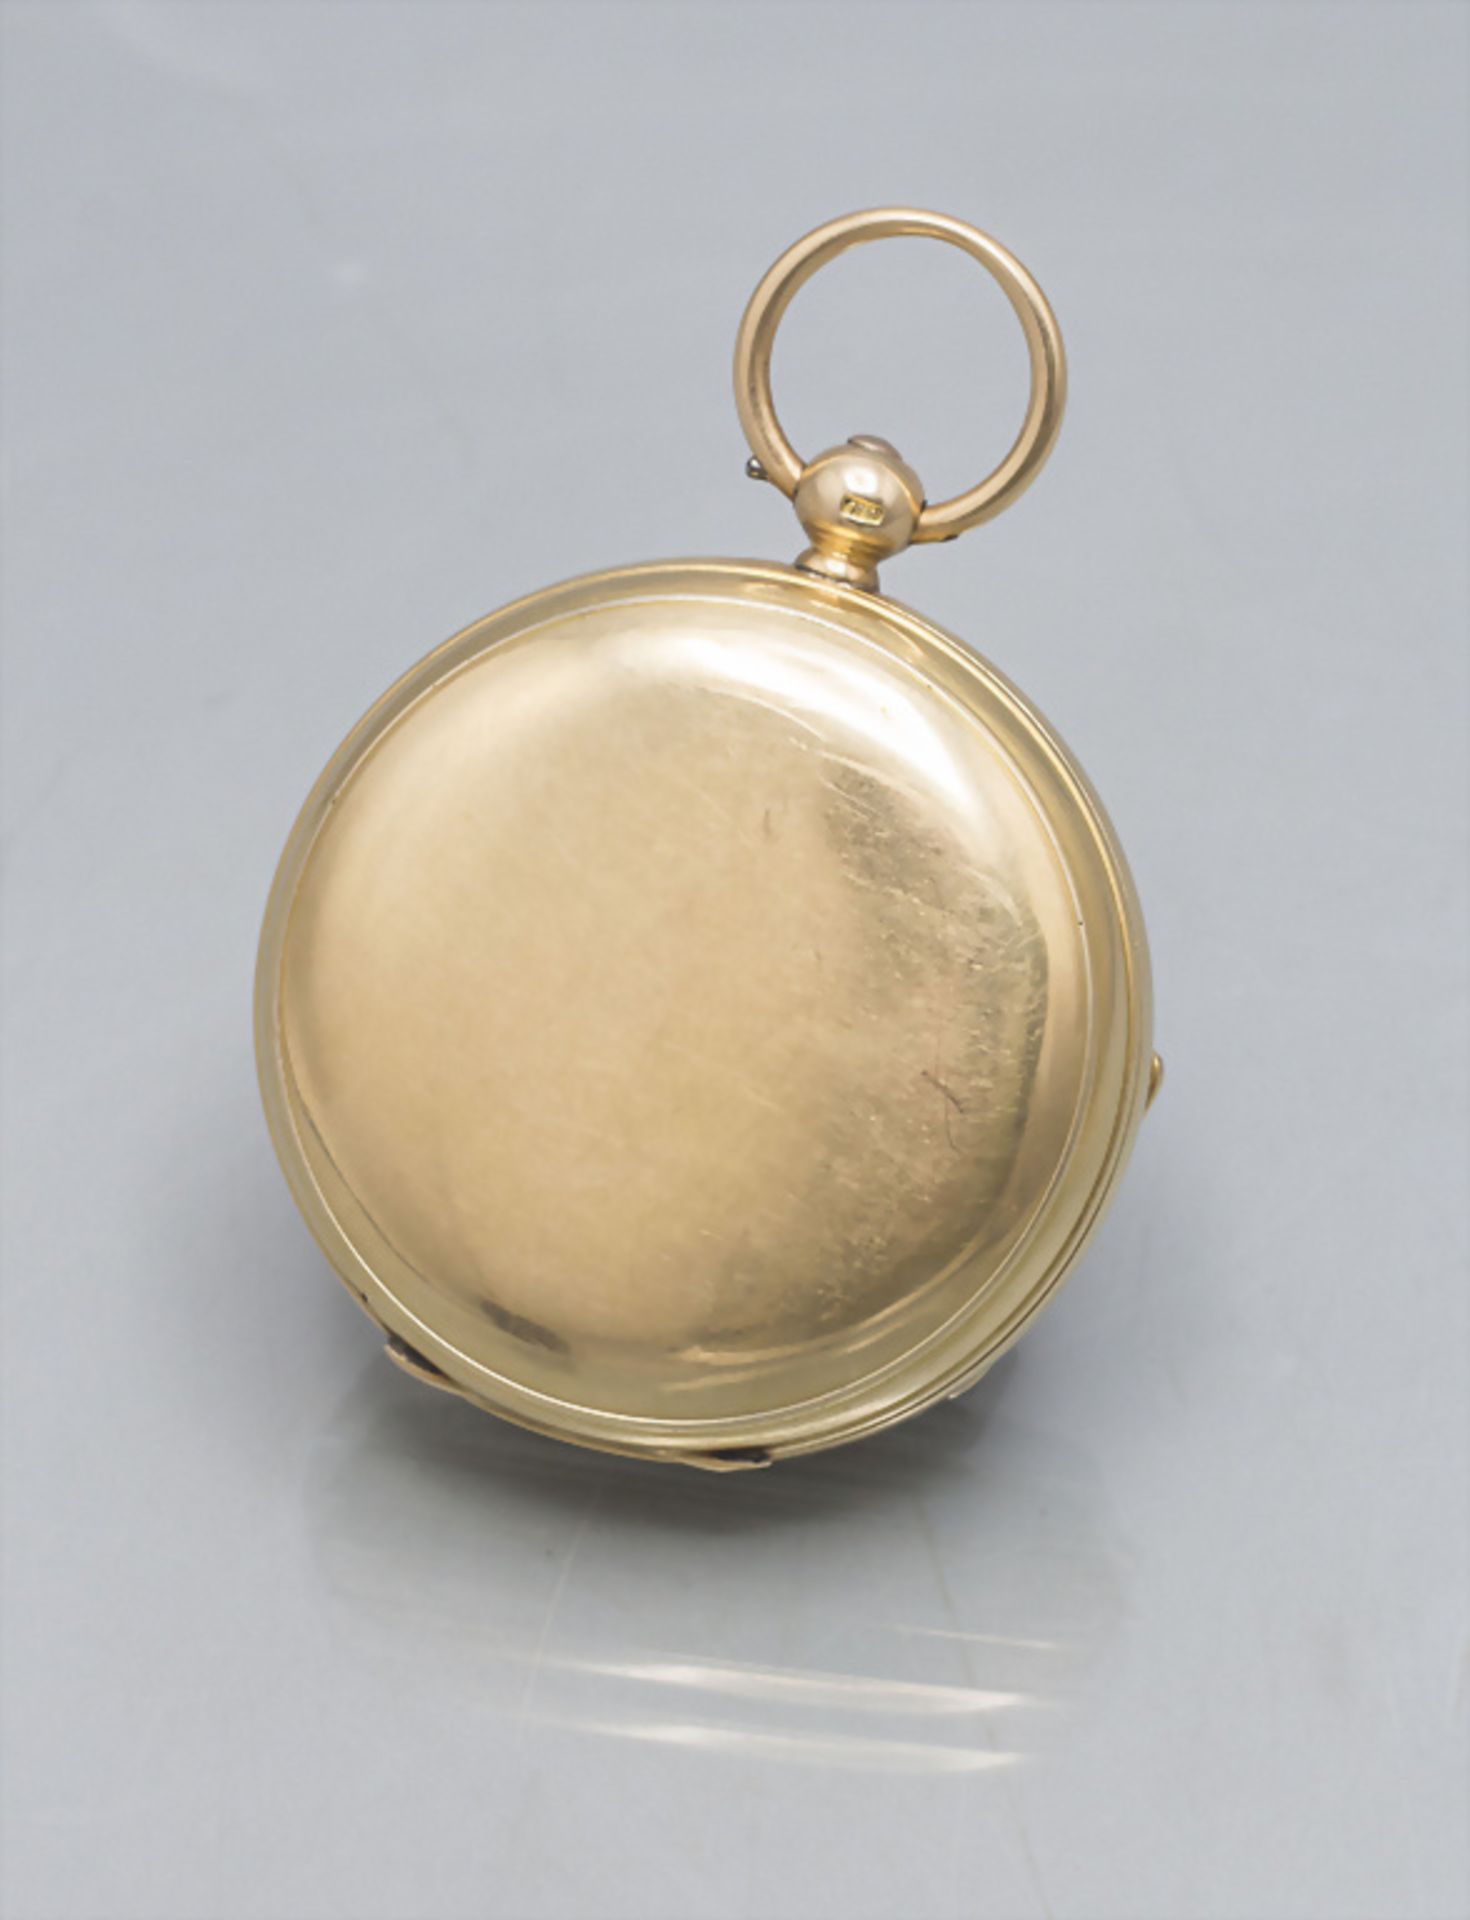 Offene Taschenuhr / An 18 ct gold open faced pocket watch, Hugh Wilkie, Glasgow, um 1900 - Image 8 of 8